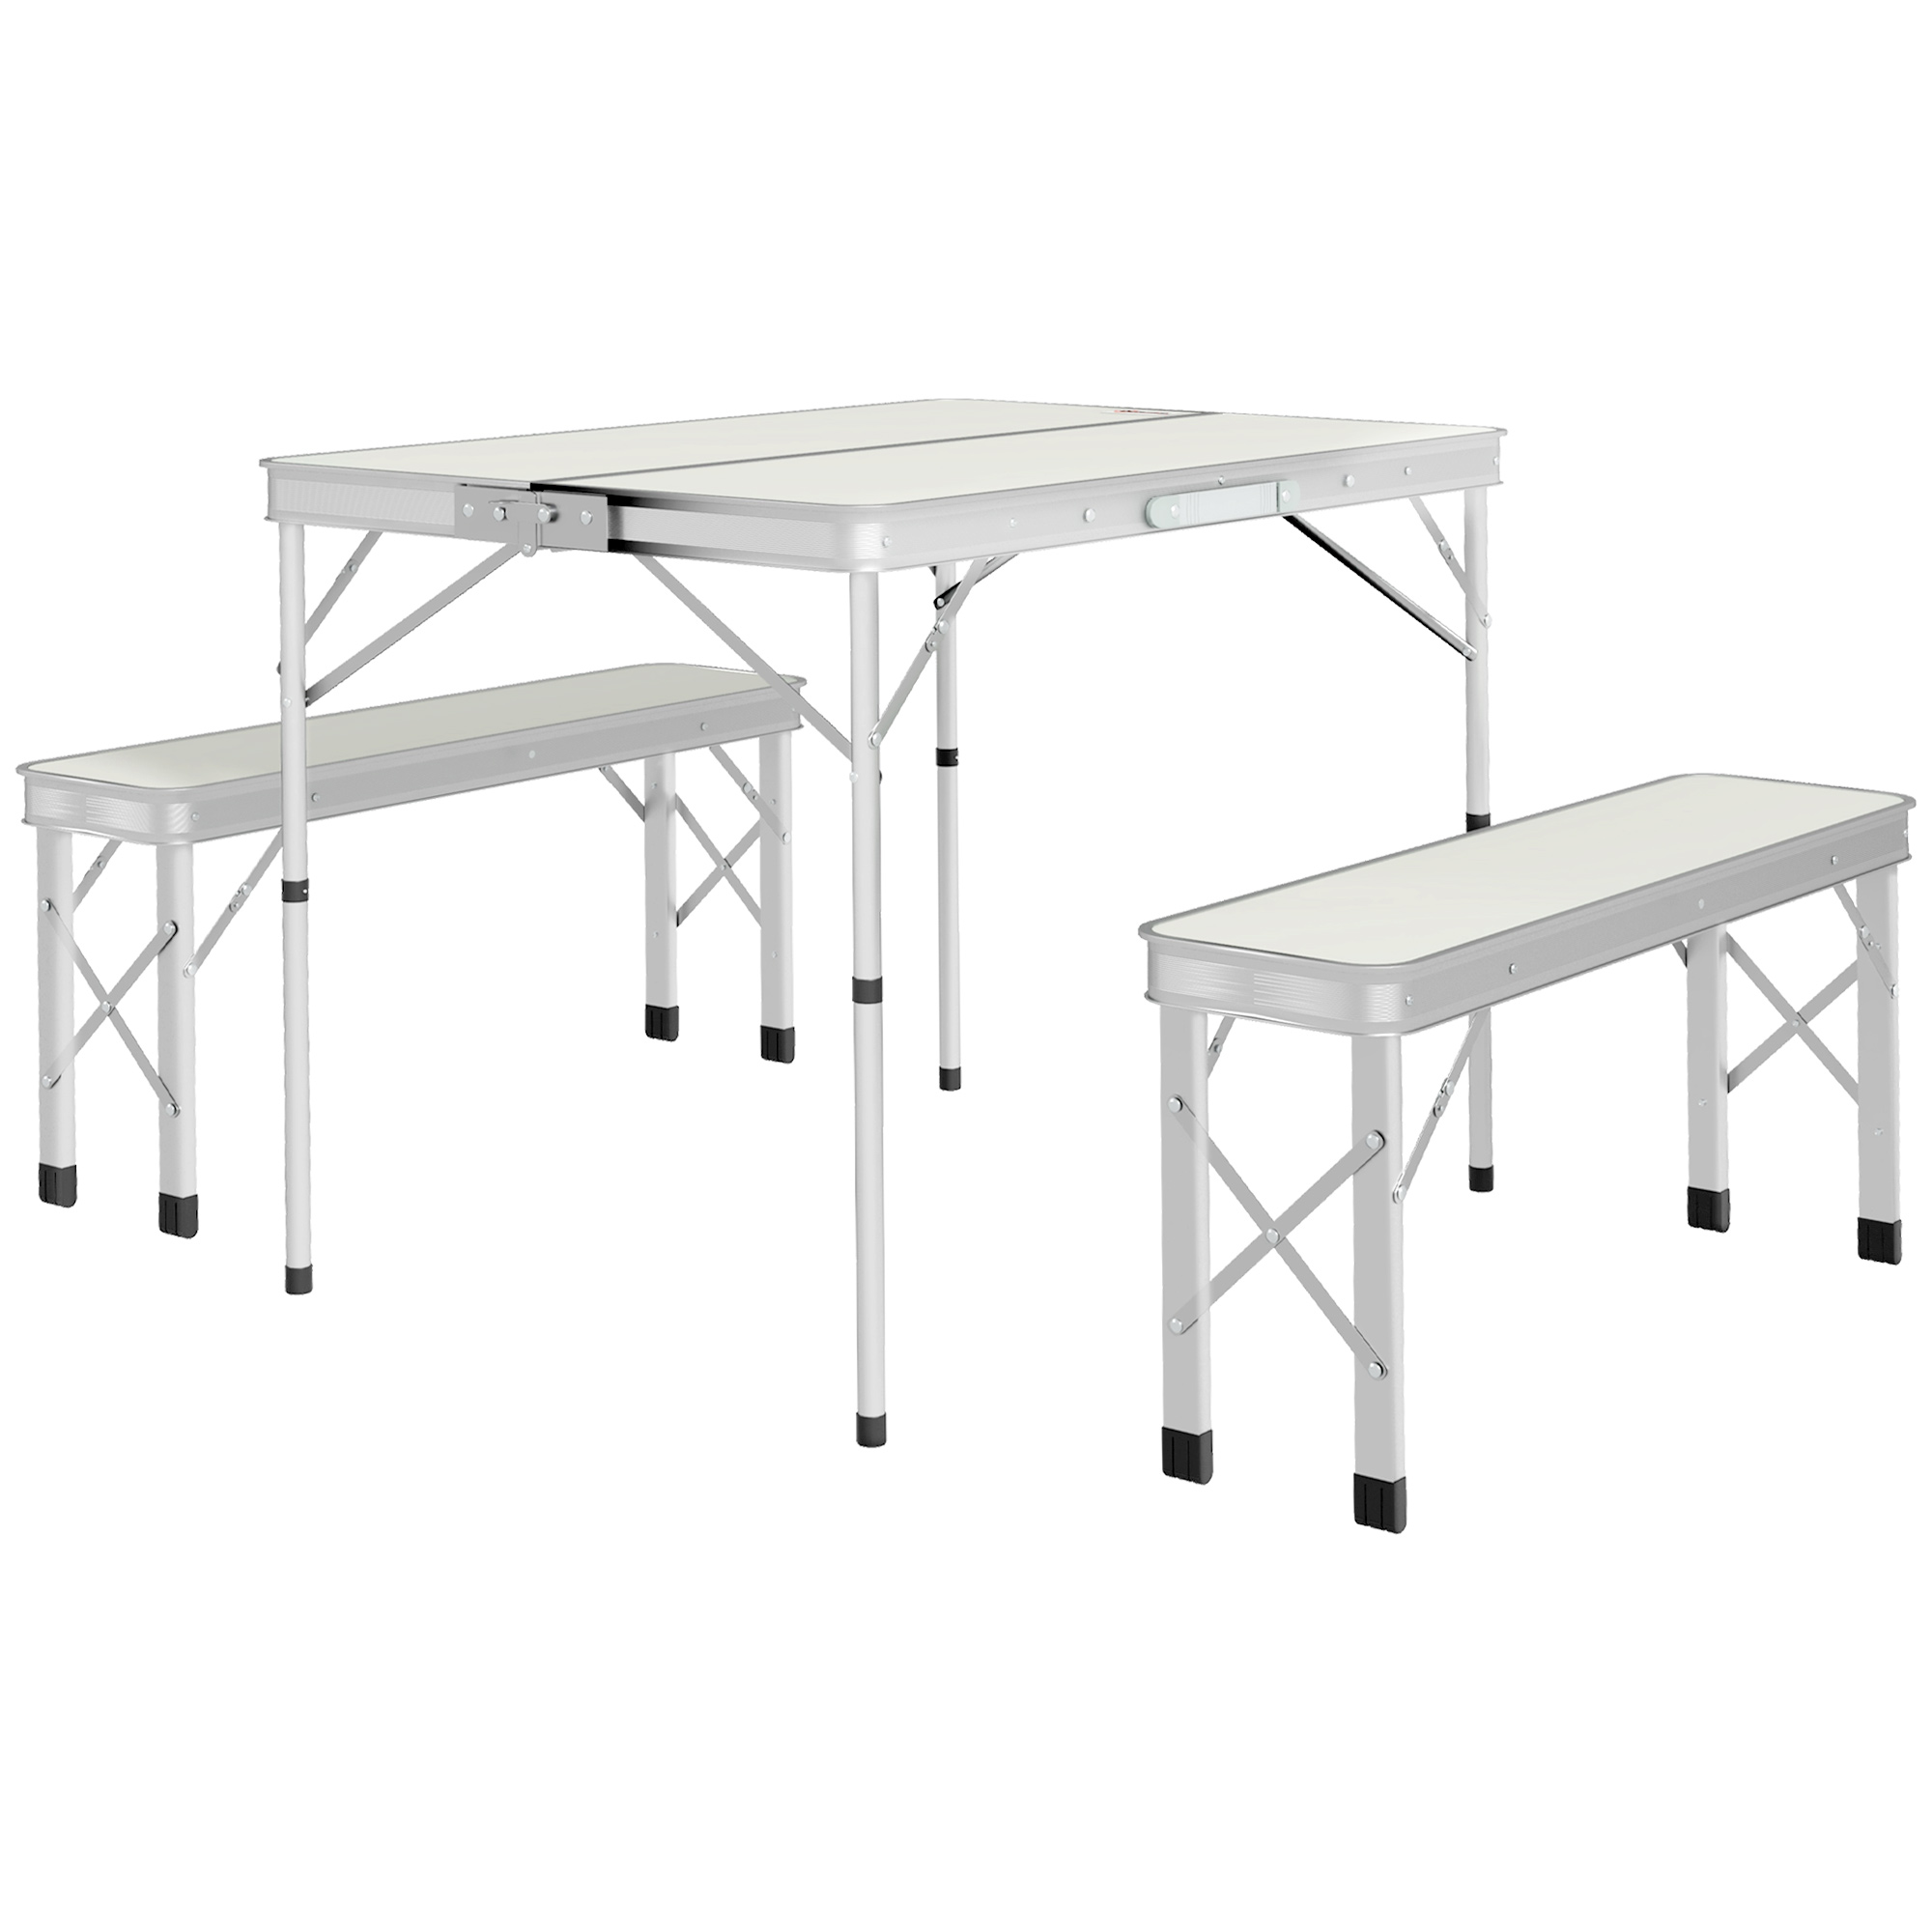 Τραπέζι πικνίκ Outsunny Πτυσσόμενο 90x62x70 cm με 2 Πάγκους εξωτερικού χώρου 86x23x40 cm